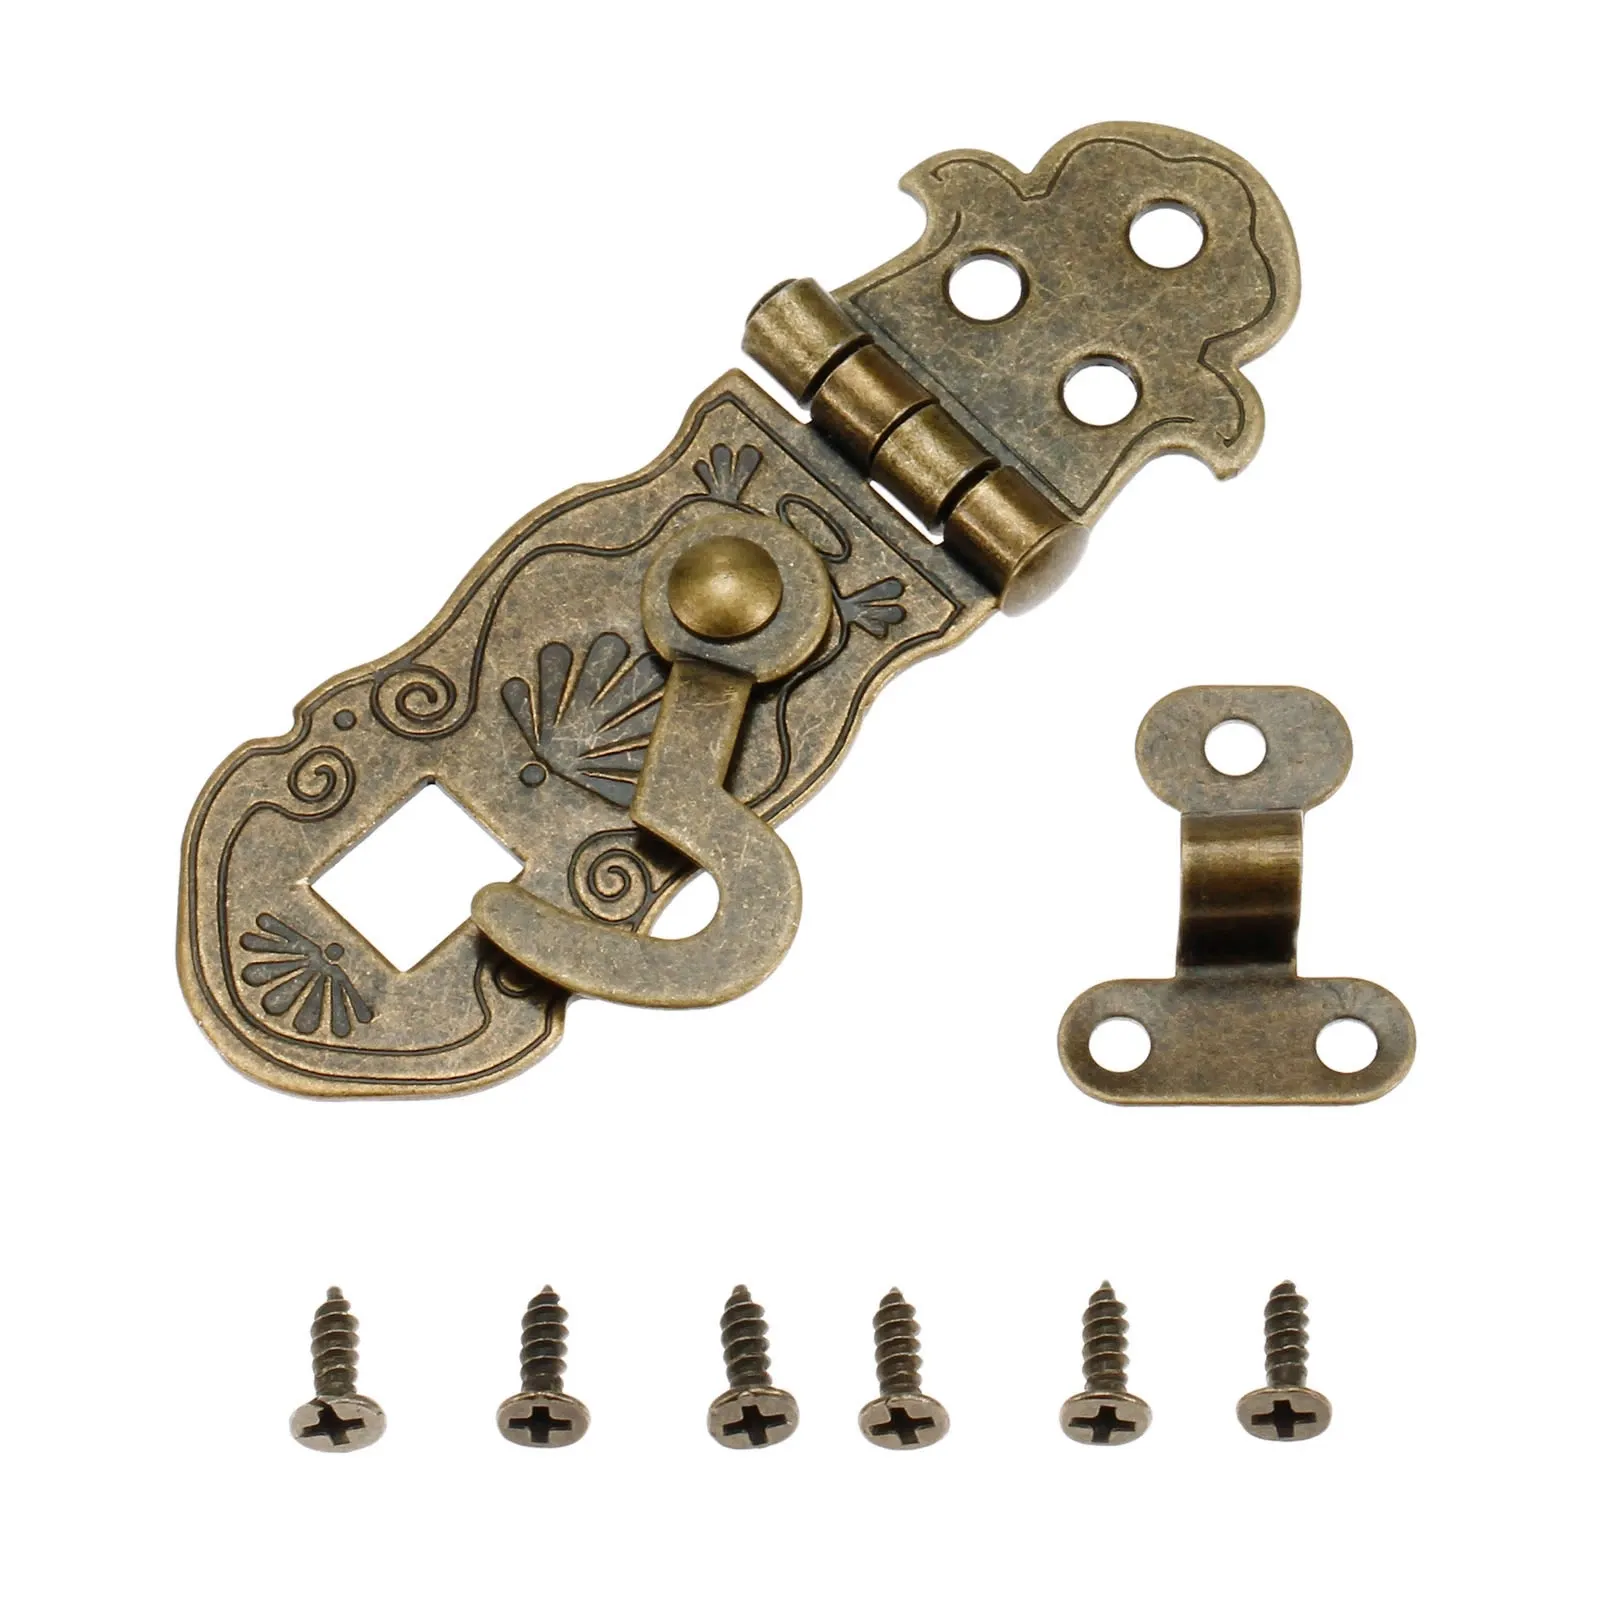 Vintage Old Lock scatola di legno Toggle Lock bronzo antico confezione regalo fibbie chiusura a scatto modello intagliato Flower Book Lock 71*24mm